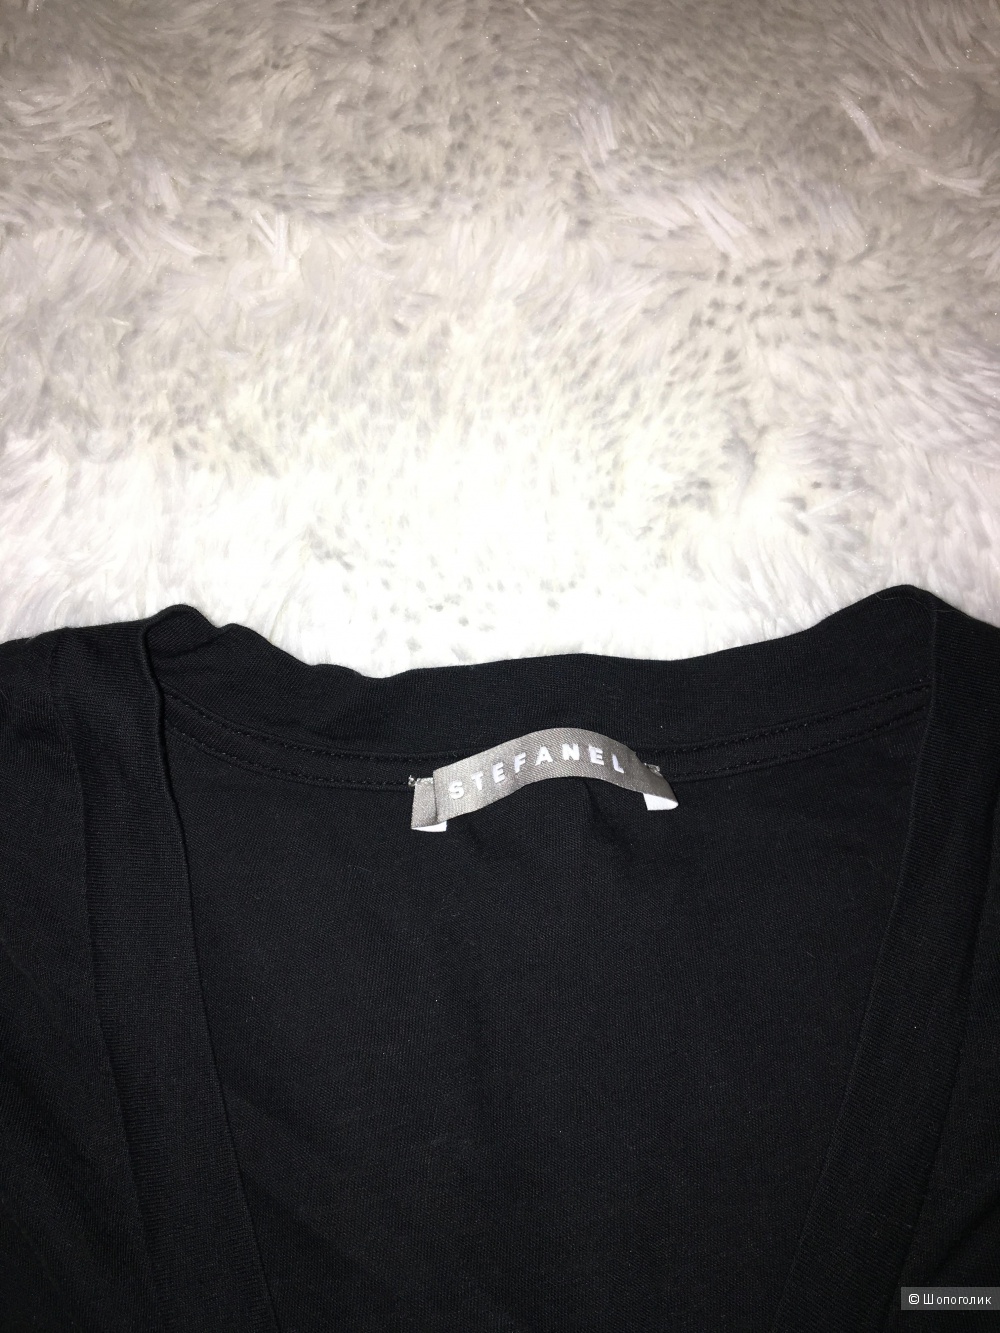 Комплект джинсы/Papaya + топ/Zara + футболка Stefanel, размер S